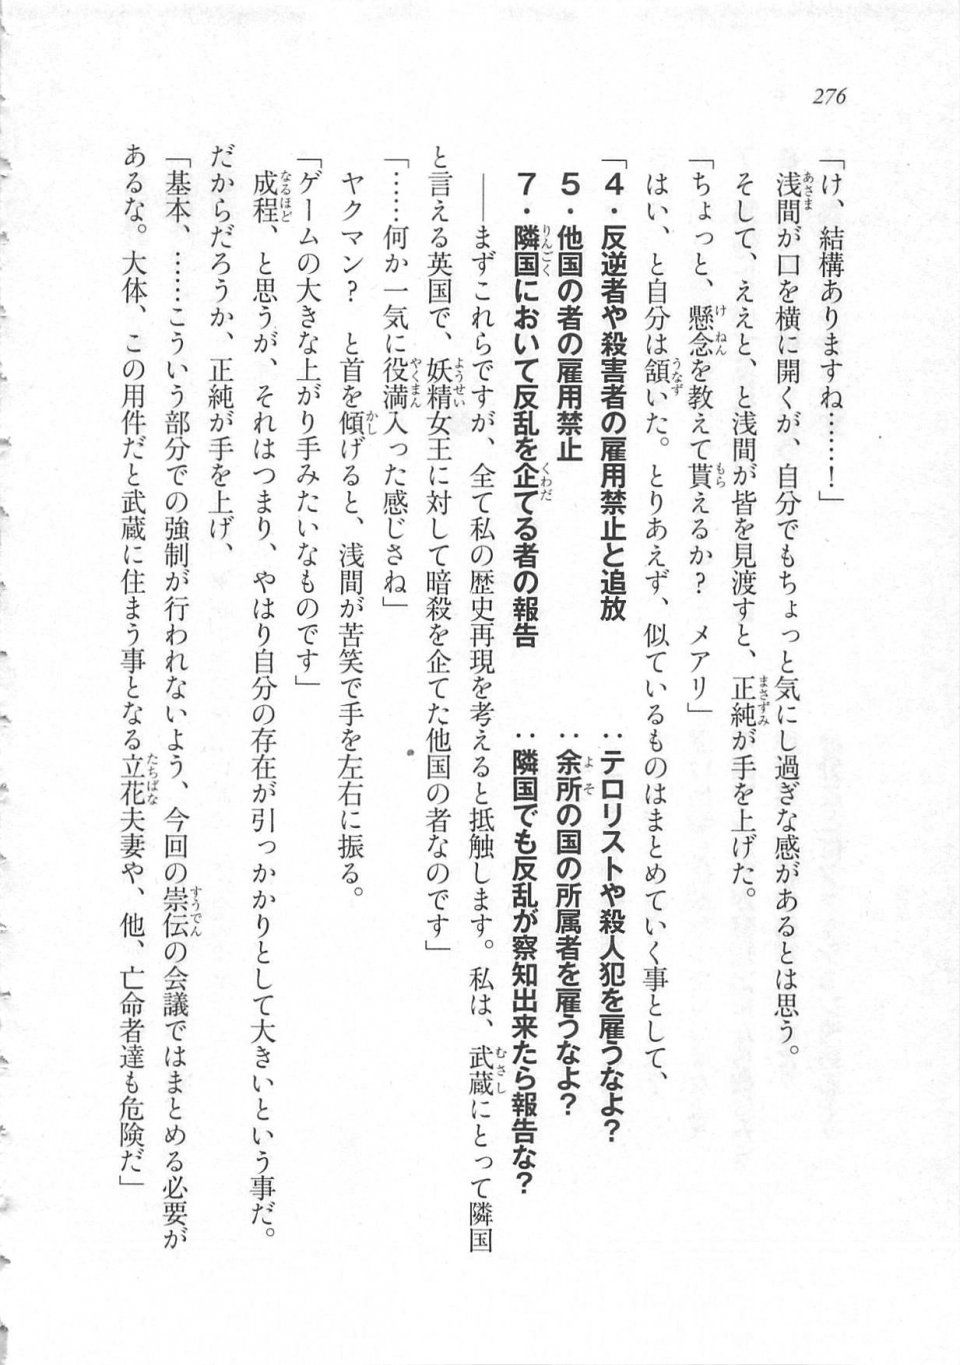 Kyoukai Senjou no Horizon LN Sidestory Vol 3 - Photo #280